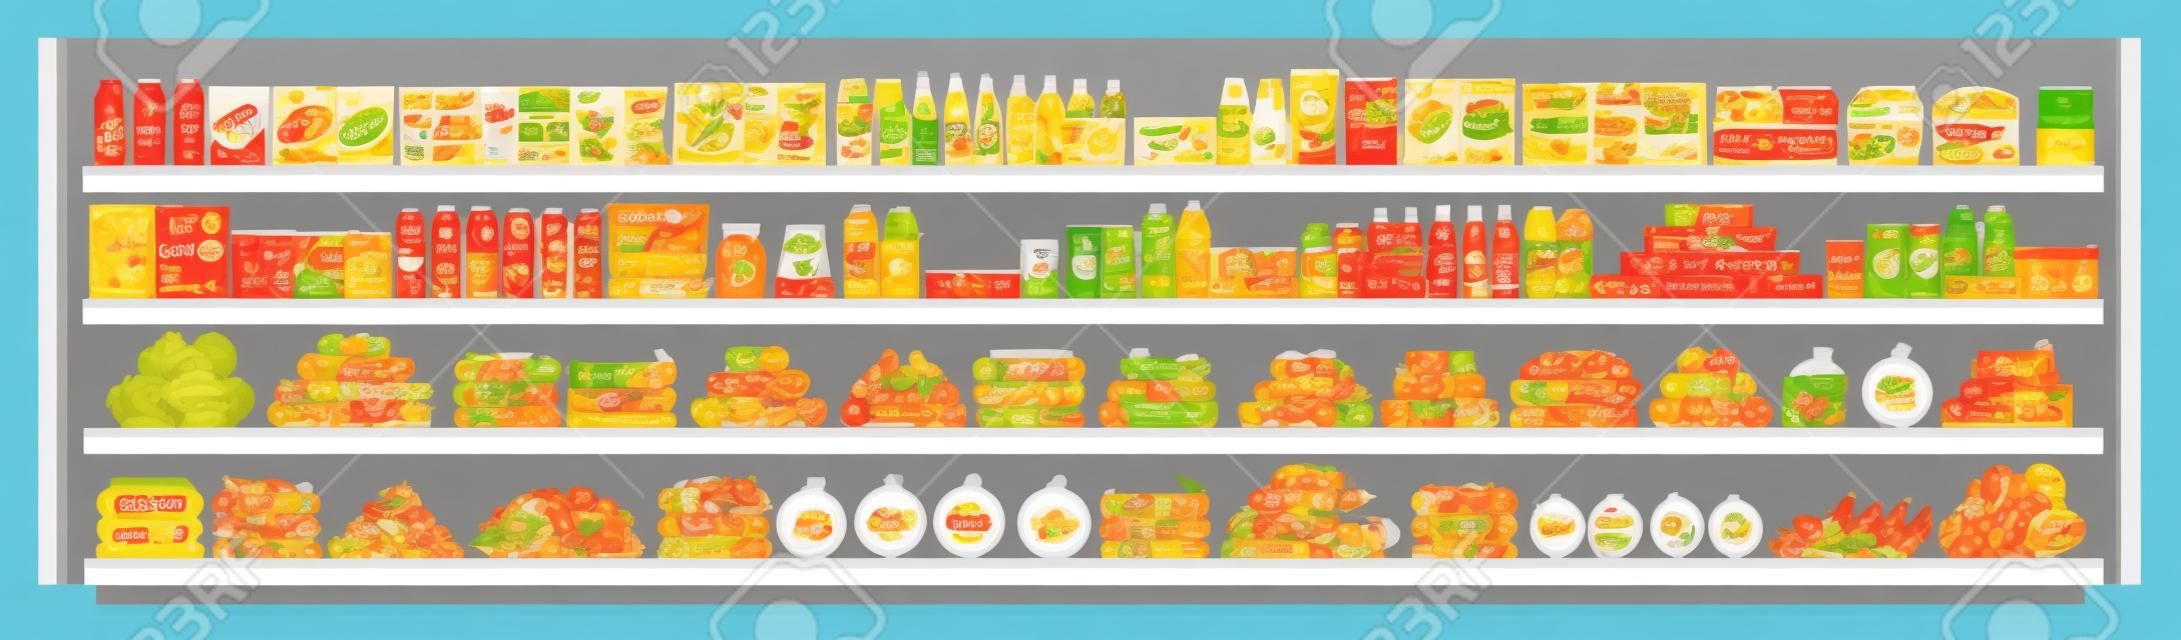 슈퍼마켓 진열대에 있는 식료품은 다양한 음식과 음료를 제공하며 평평한 벡터 매끄러운 배경 삽화를 제공합니다. 쇼핑 및 소매 개념입니다.